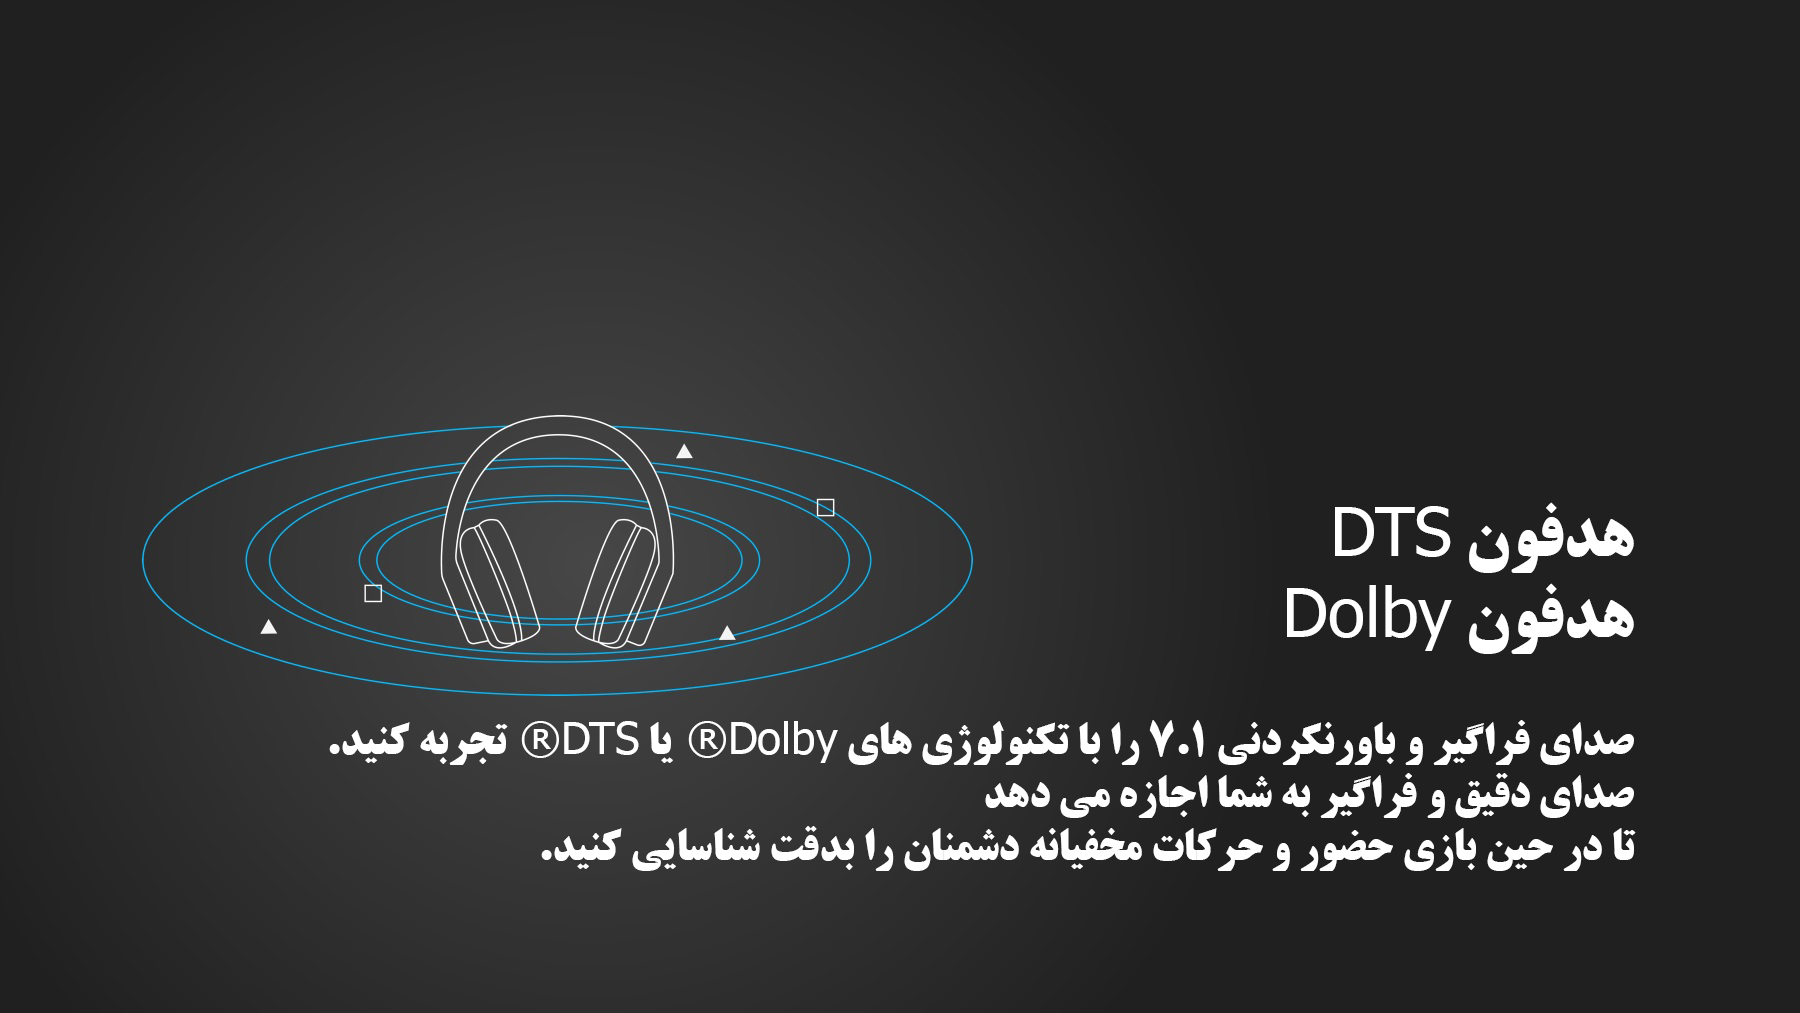 Logitech DTS Dolby Sound